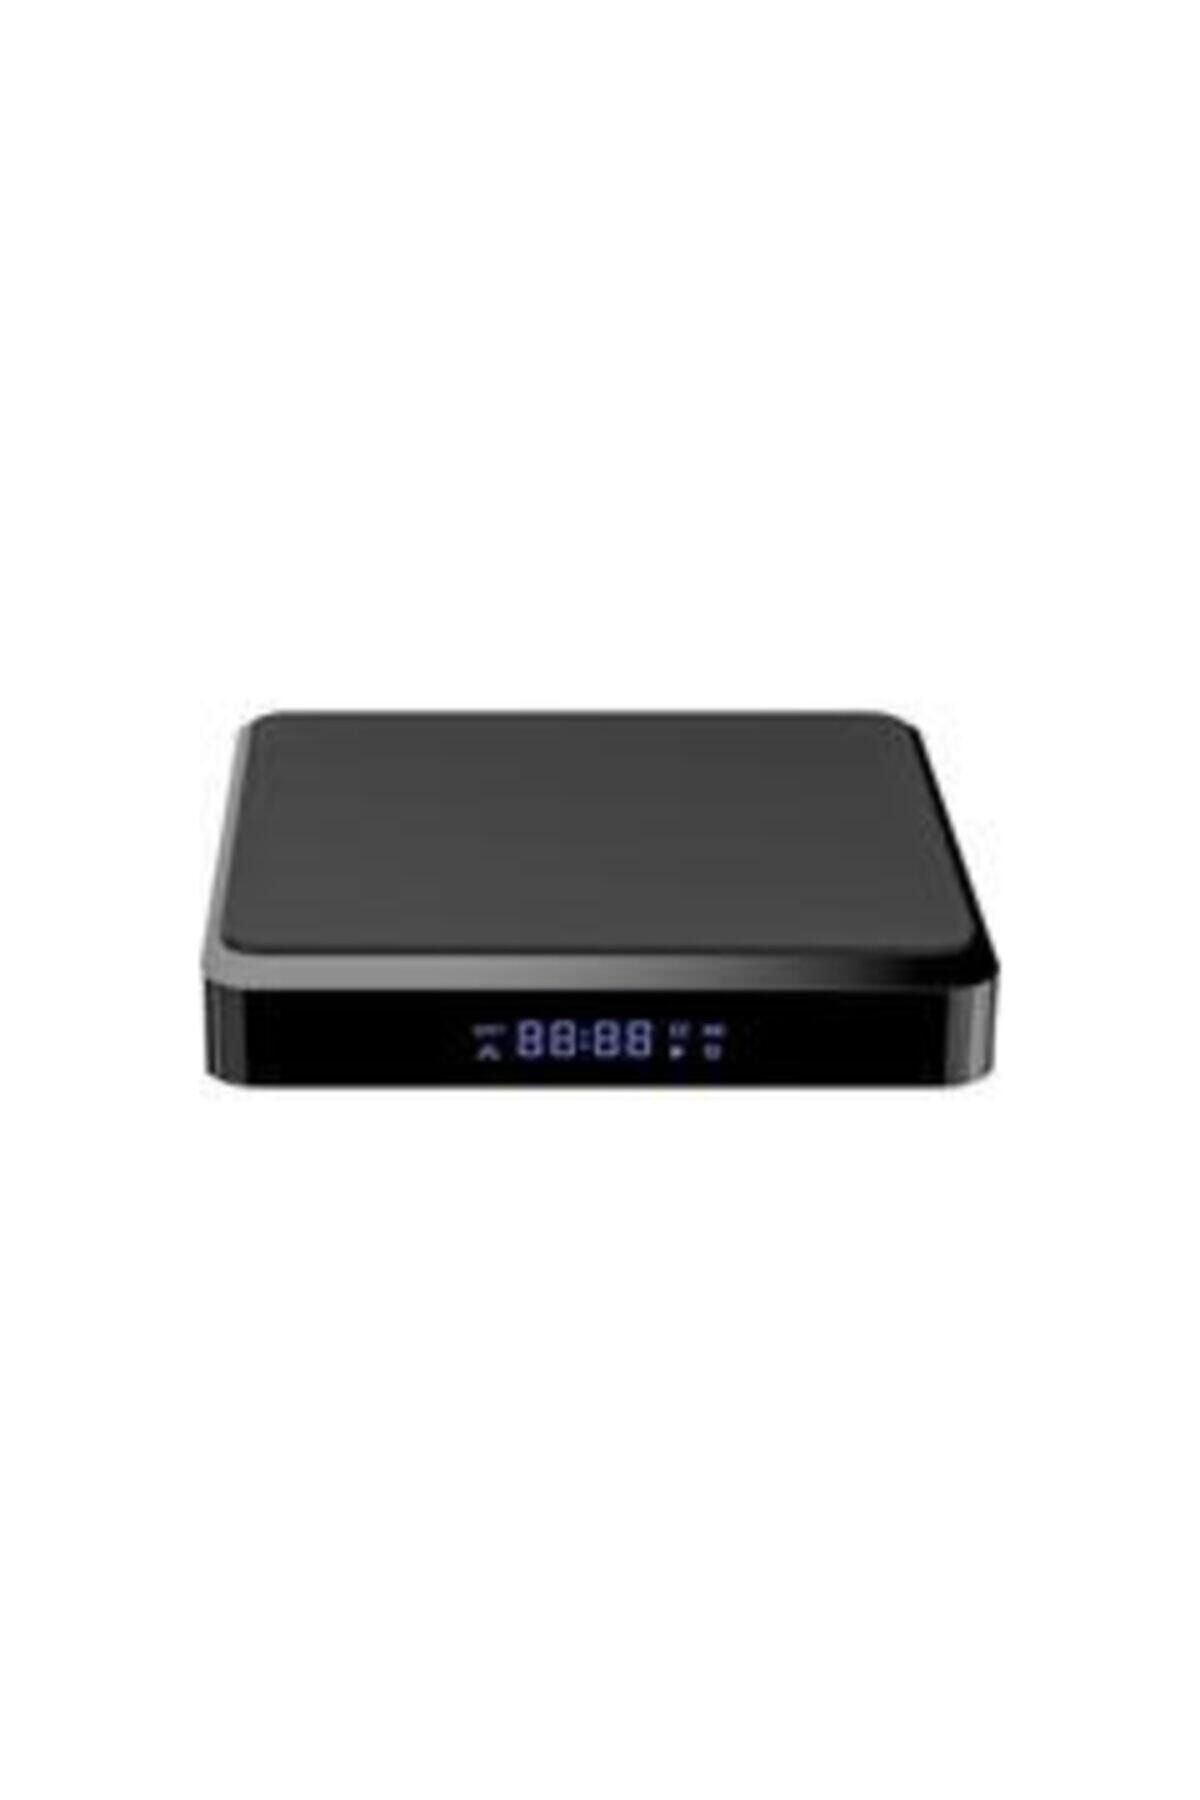 wellbox Androıd Ip Tv Wi-fi 16gb Hafıza 64 Bit Quad Işlemci Hdmı 4k